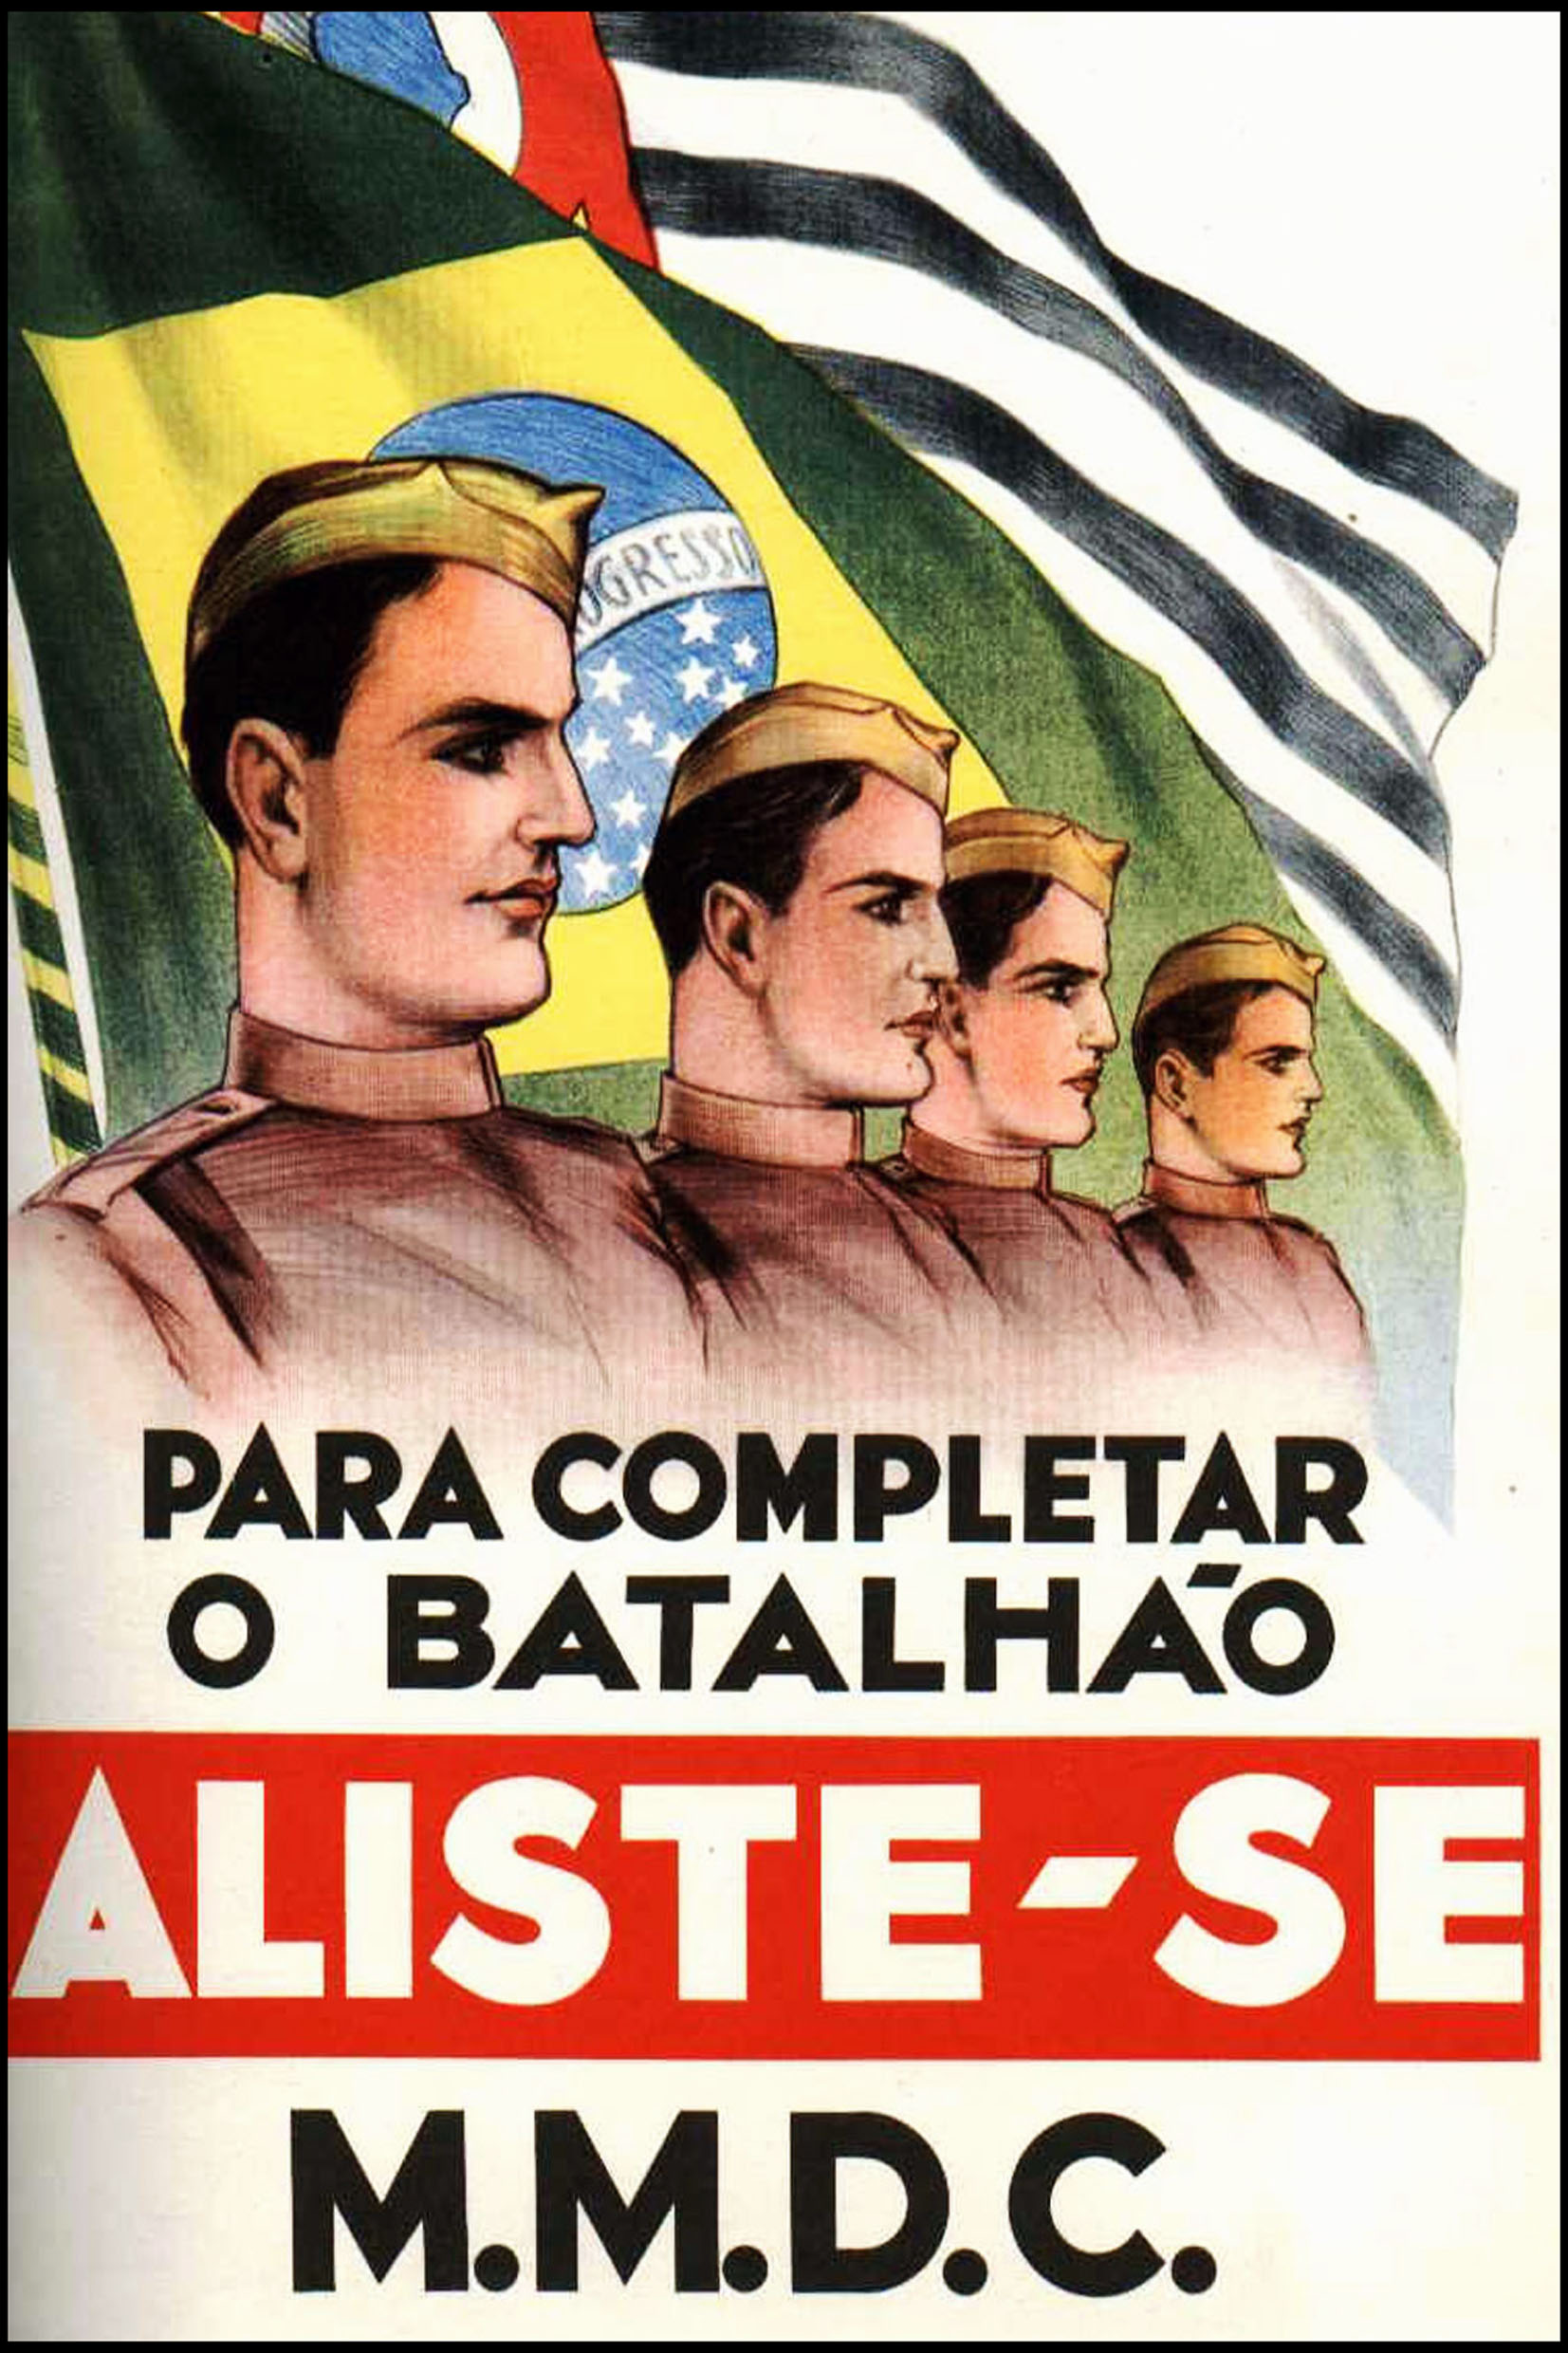 Revolução Constitucionalista: a causa que mobilizou os paulistas em 1932